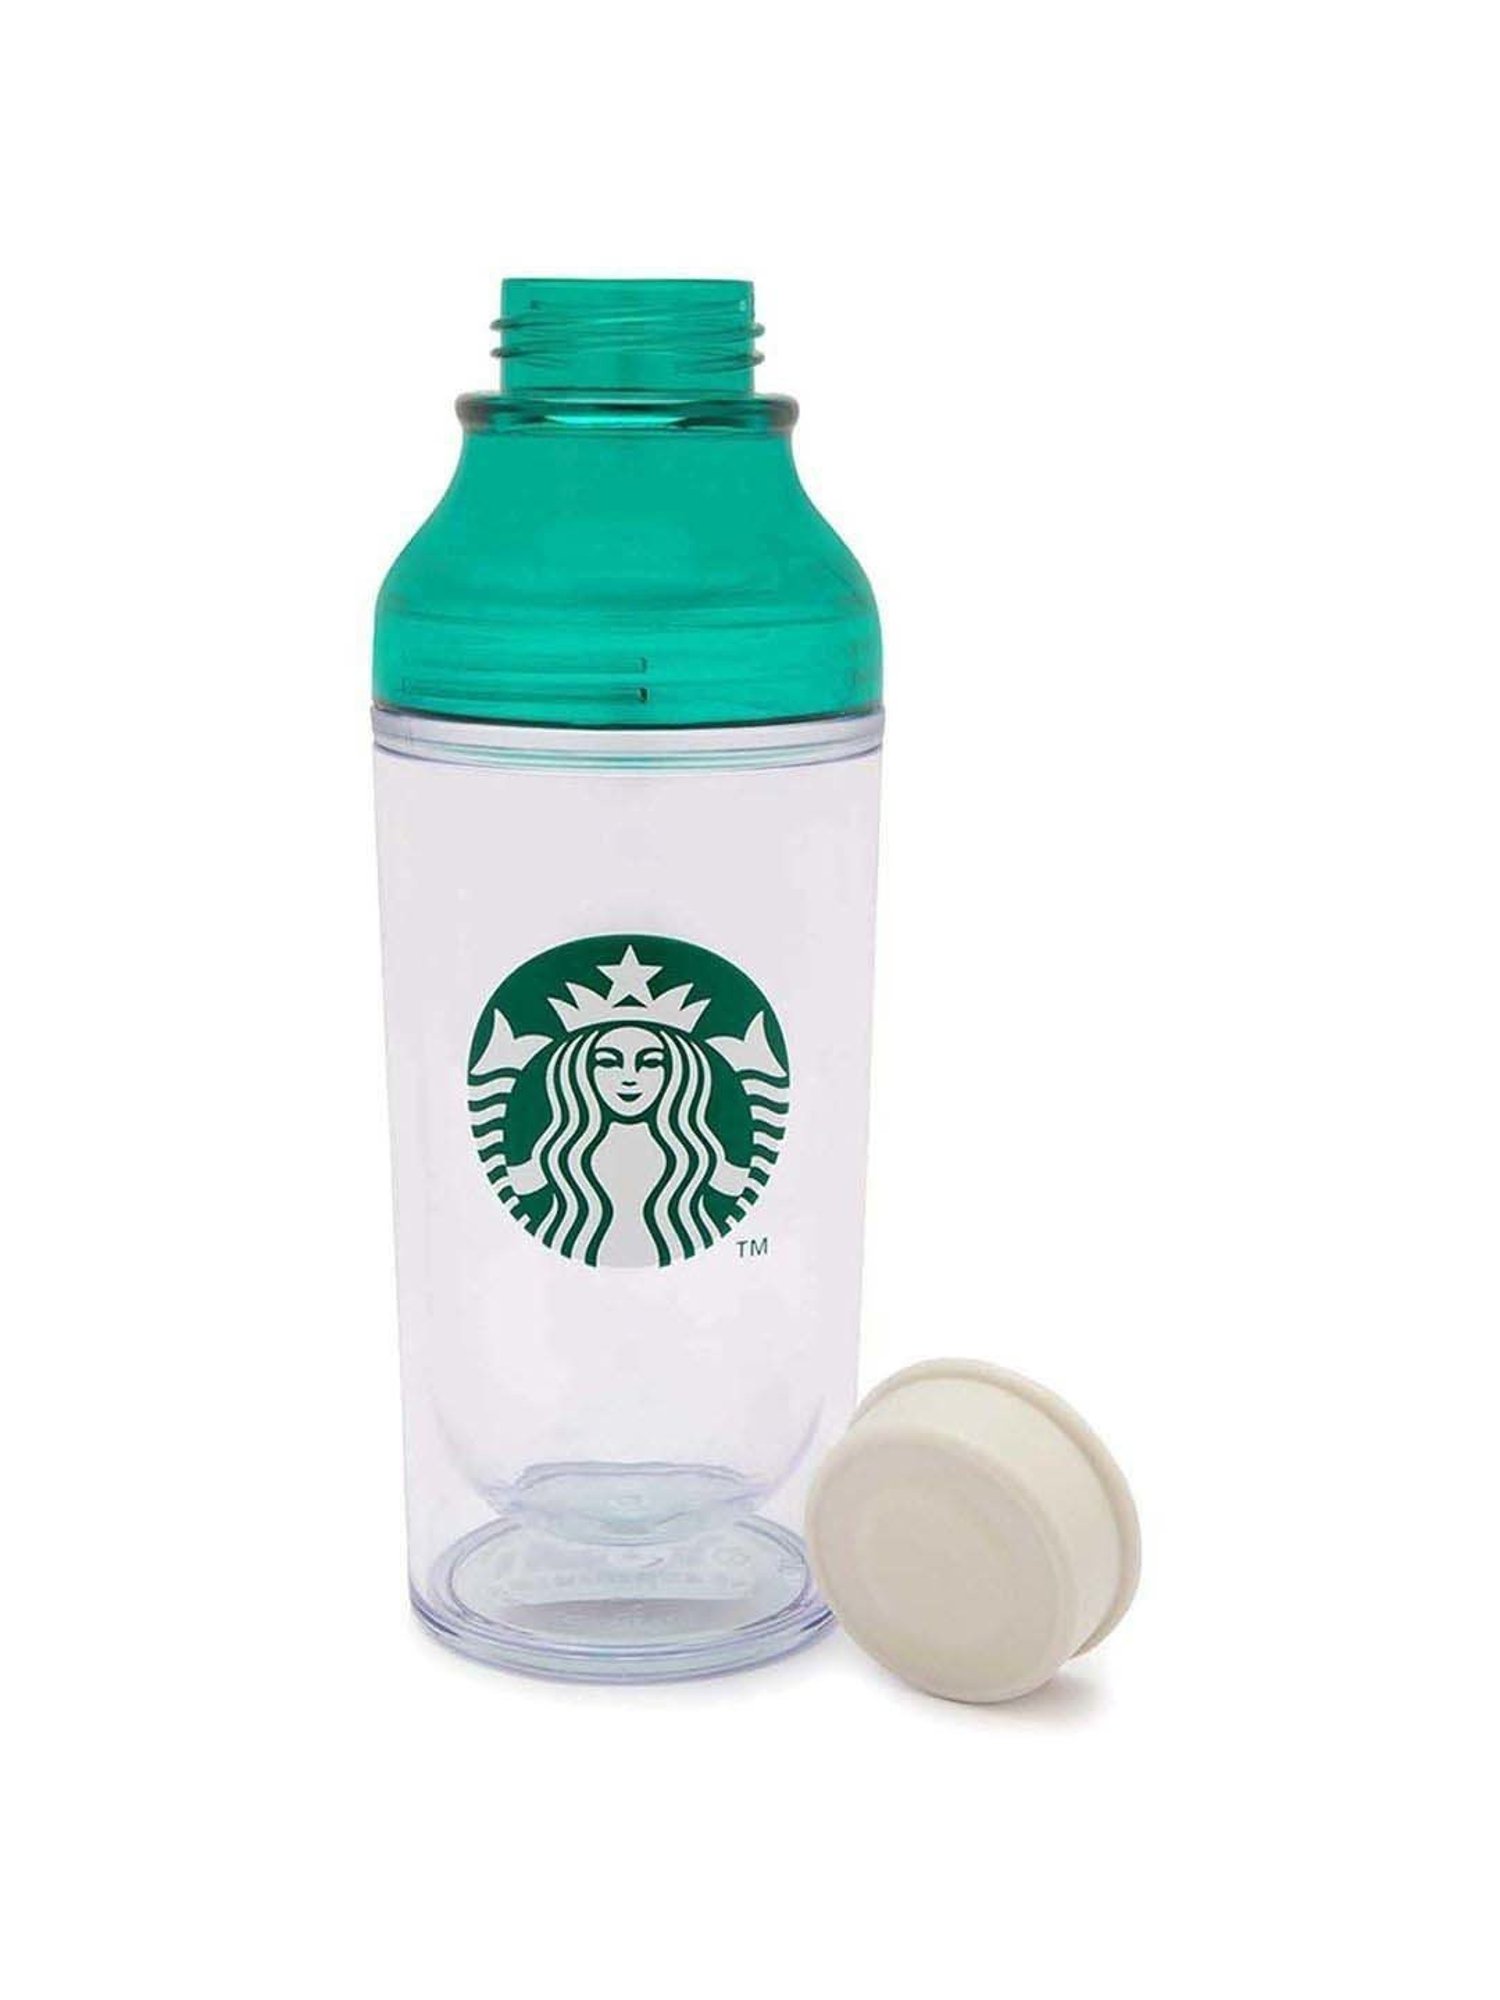 Green & White Shaker Bottle 443 ml Starbucks Coffee